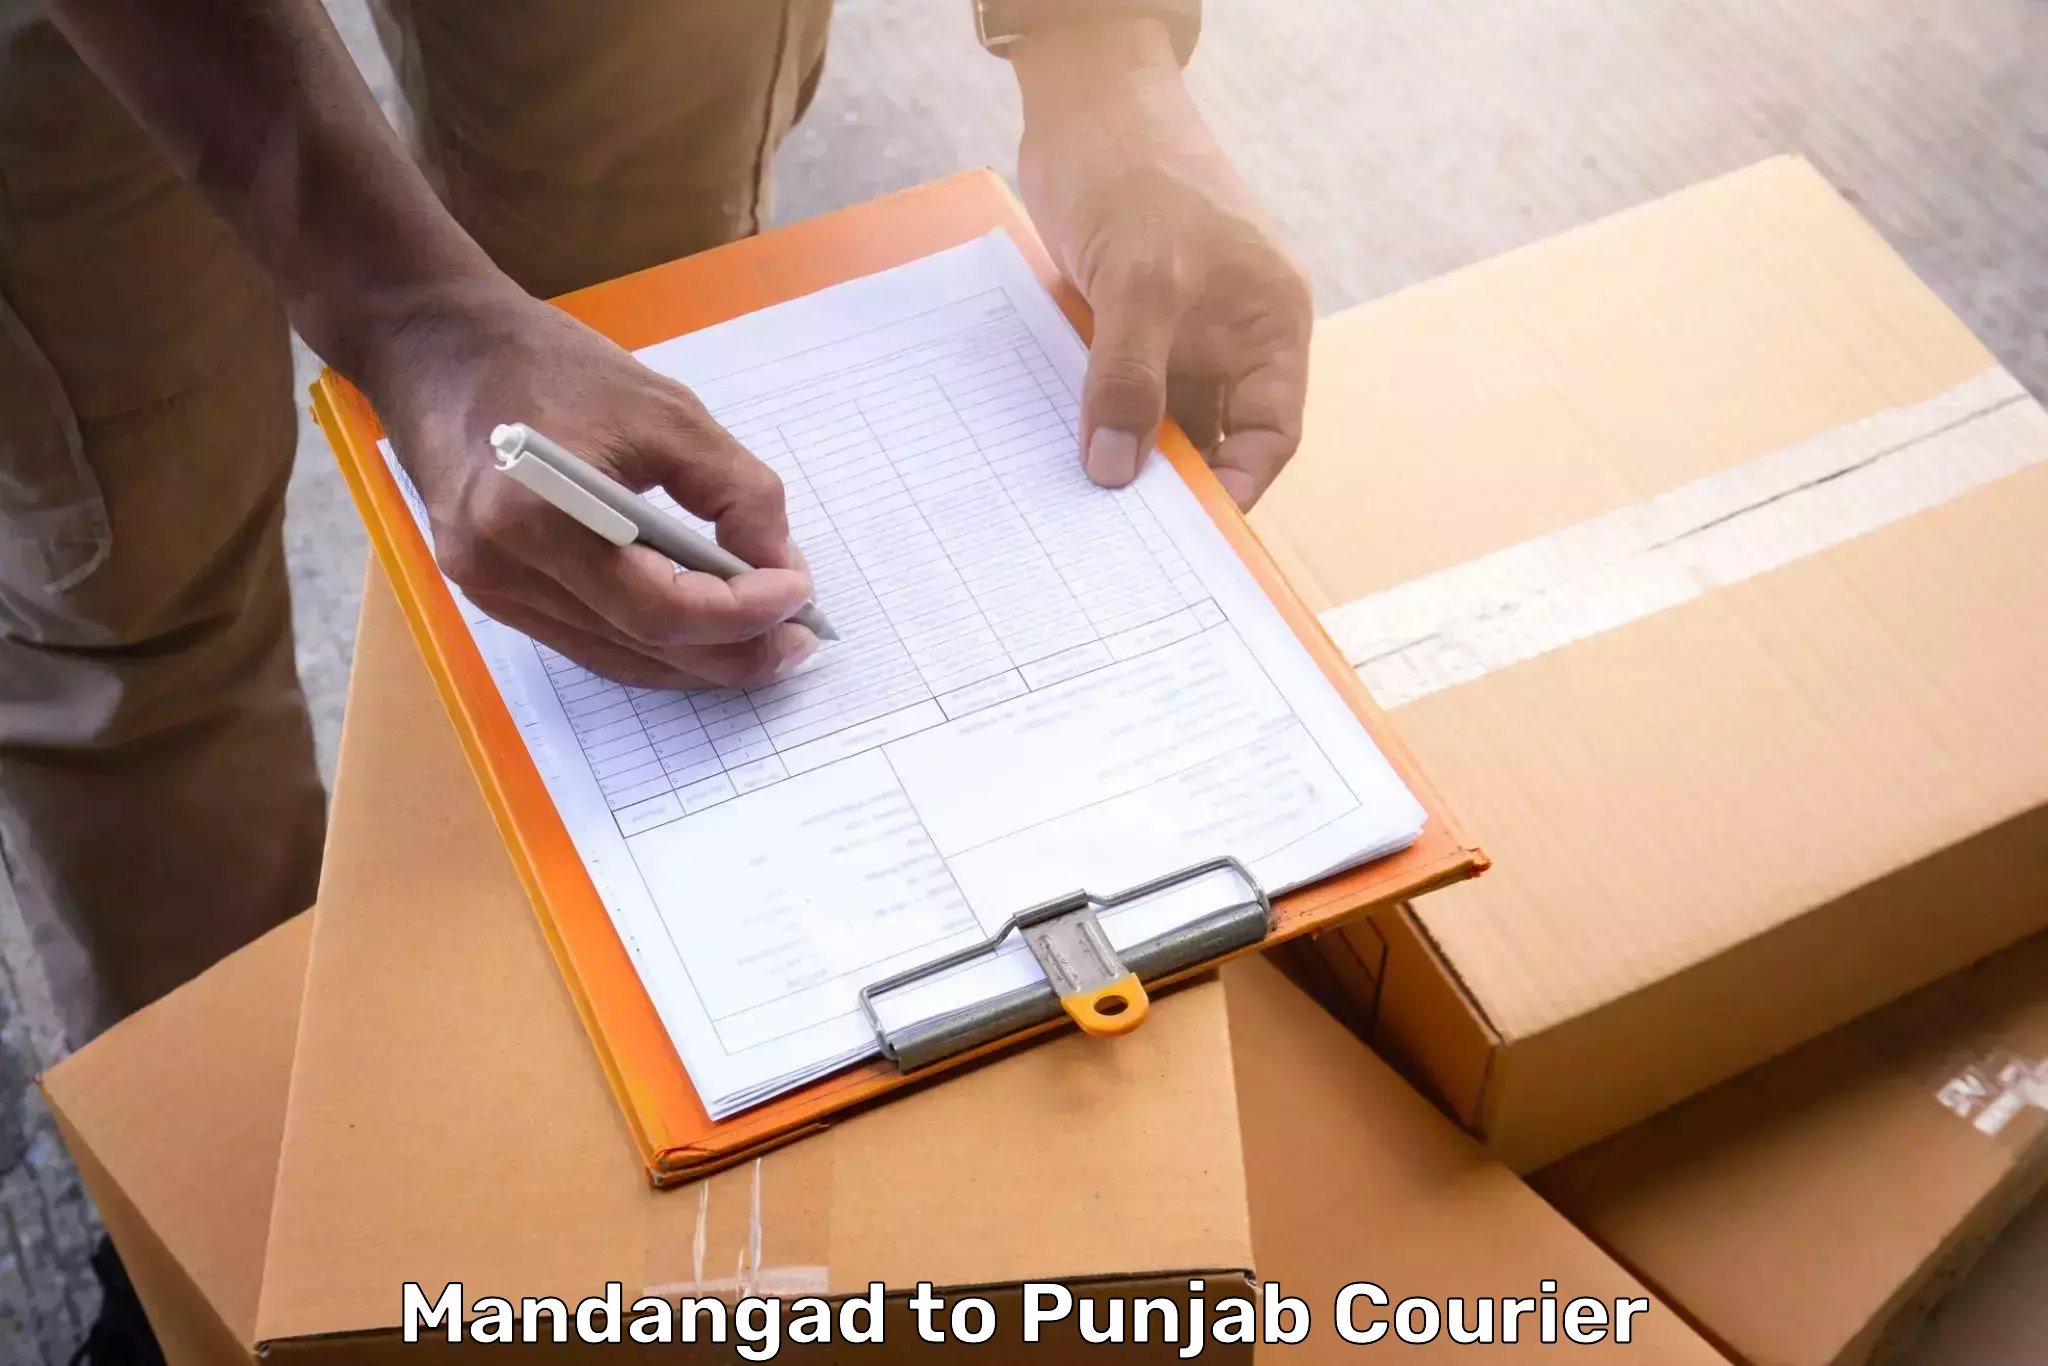 Baggage transport logistics Mandangad to Punjab